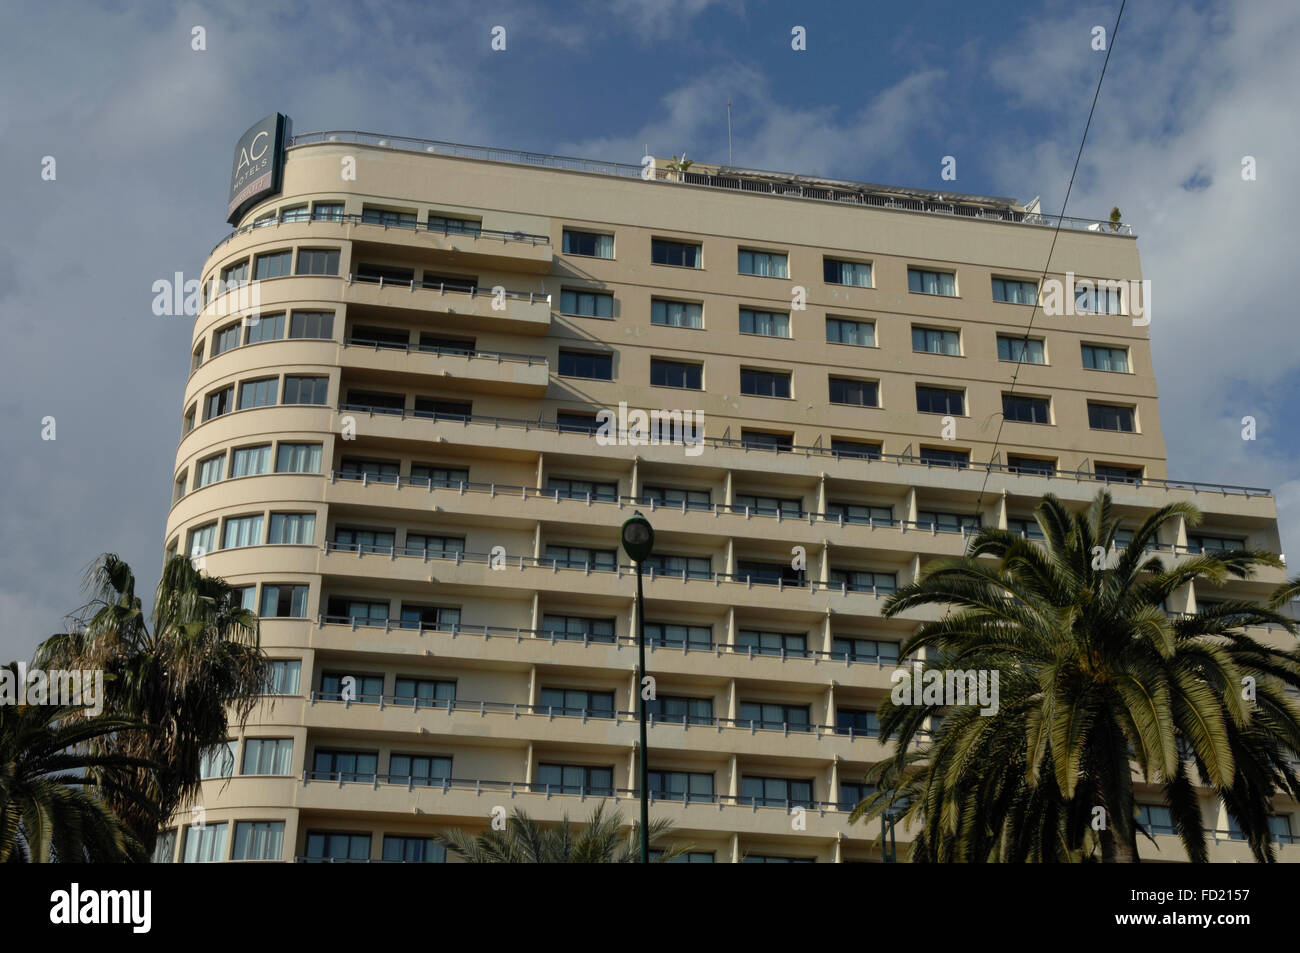 Hotel AC Málaga Palacio Marriott Hotel de 5 estrellas en el centro de Malaga. Foto de stock